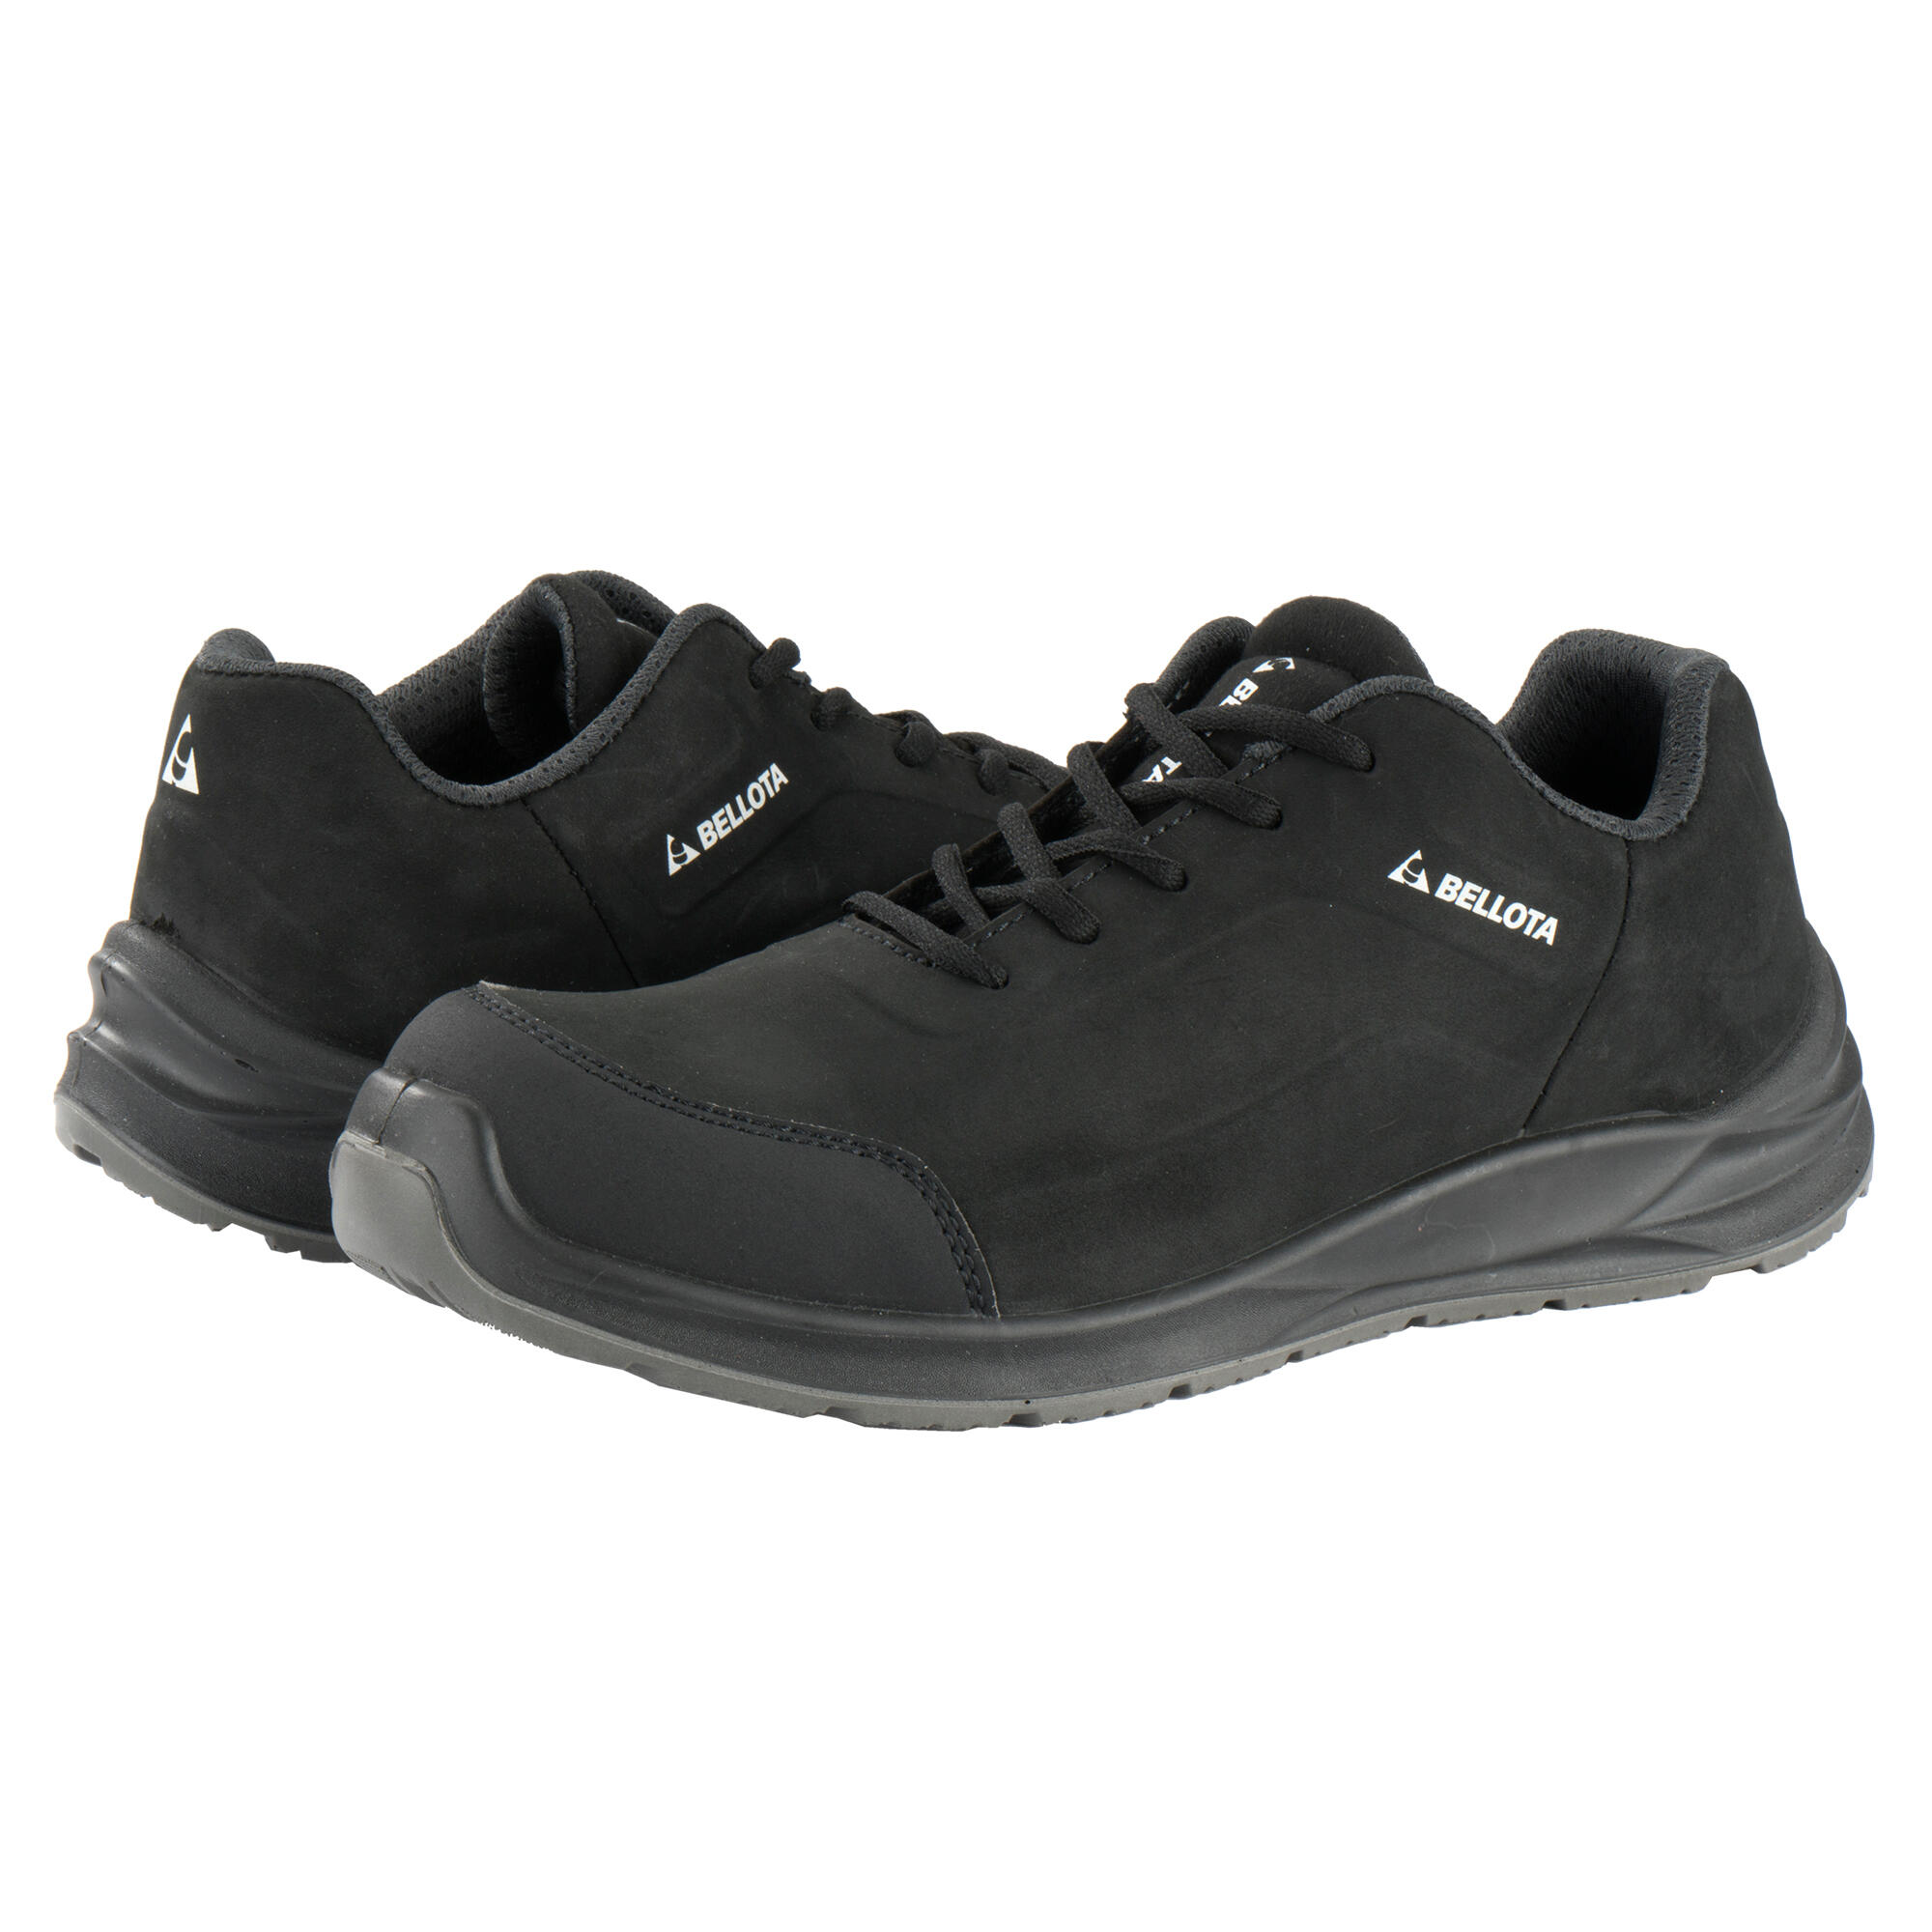 Zapatos seguridad s3 bellota flex carbón negro t44